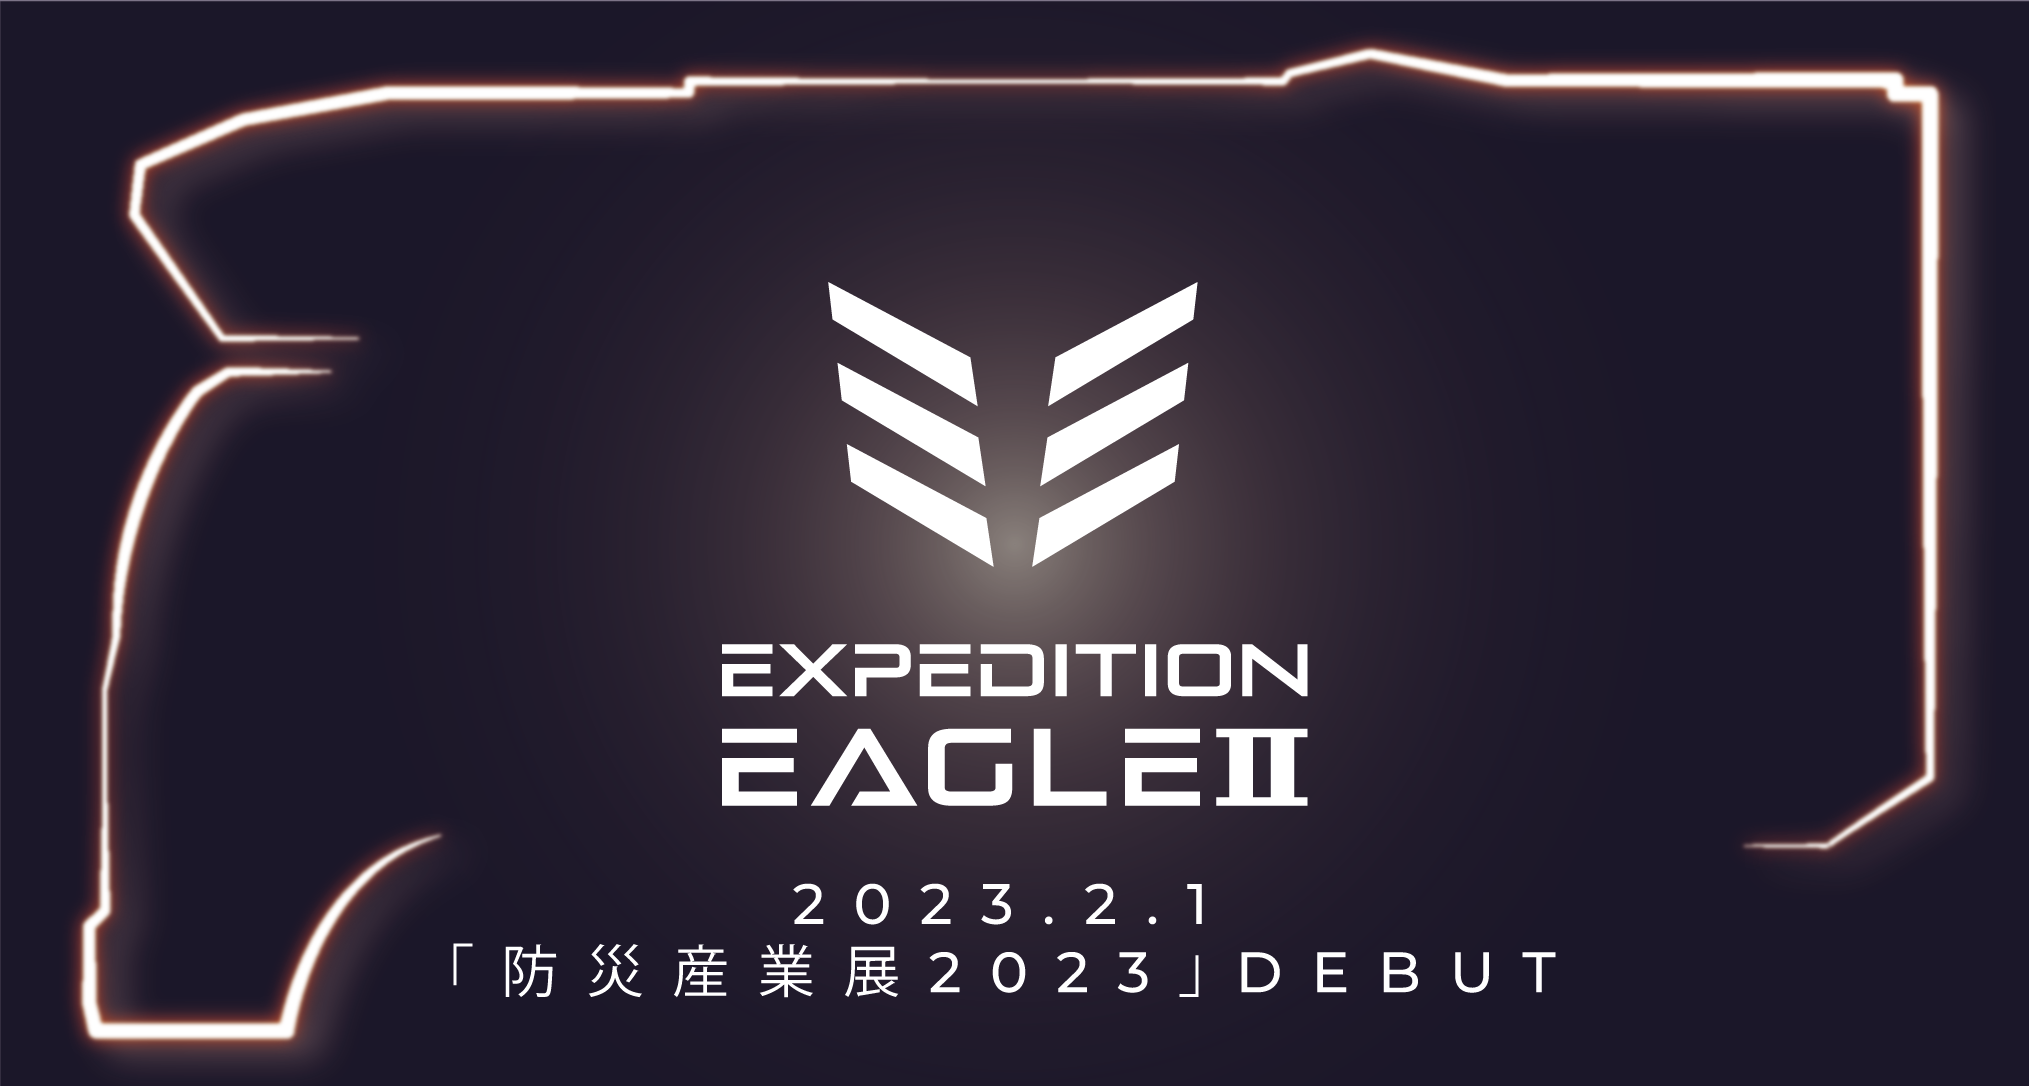 オフロード系キャンパー“エクスペディション”に居住性も向上！
バンクベッドも備えた『EXPEDITION EAGLE II』を発表！